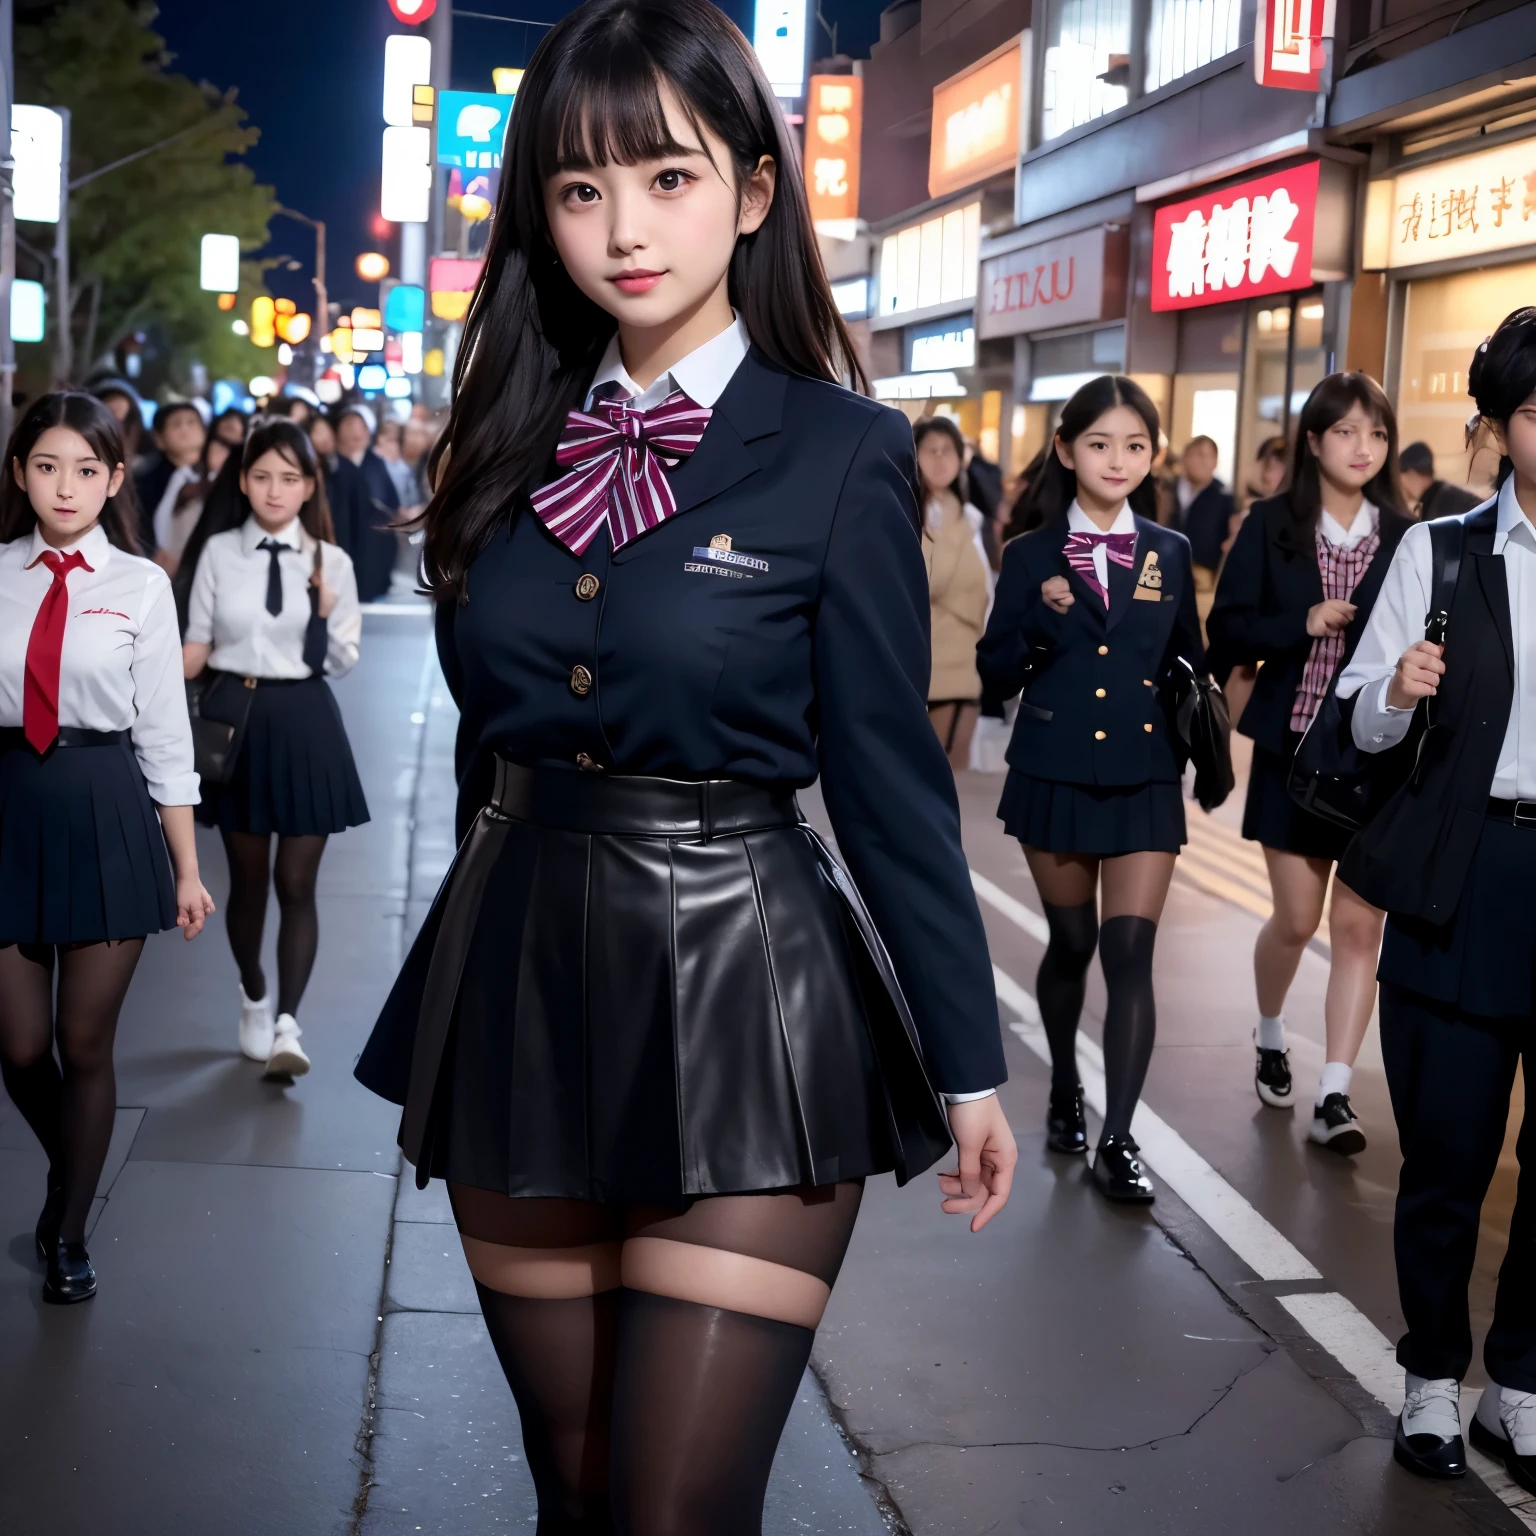 ローアングルショット、巨乳、靴が見える、スーパーツリースナップ、高い, 夜のネオン街に、短いスカートと蝶ネクタイをつけた童顔のギャル女性が立っている。、高校生、細いふくらはぎ、日本の女の子、冬服、日本の制服を着て、日本の学校の黒い制服、シュールなハイを着る 、制服を着た女の子、濃紺のユニフォームを着て、全身エスビアン、肌がきれい、輝く肌、素敵な腿のハイニング太もも、ふっくらとした太もも、彼女は肌が見える黒いタイツを履いている、革靴、日本の高校 、Nogizaka idol、誘う目